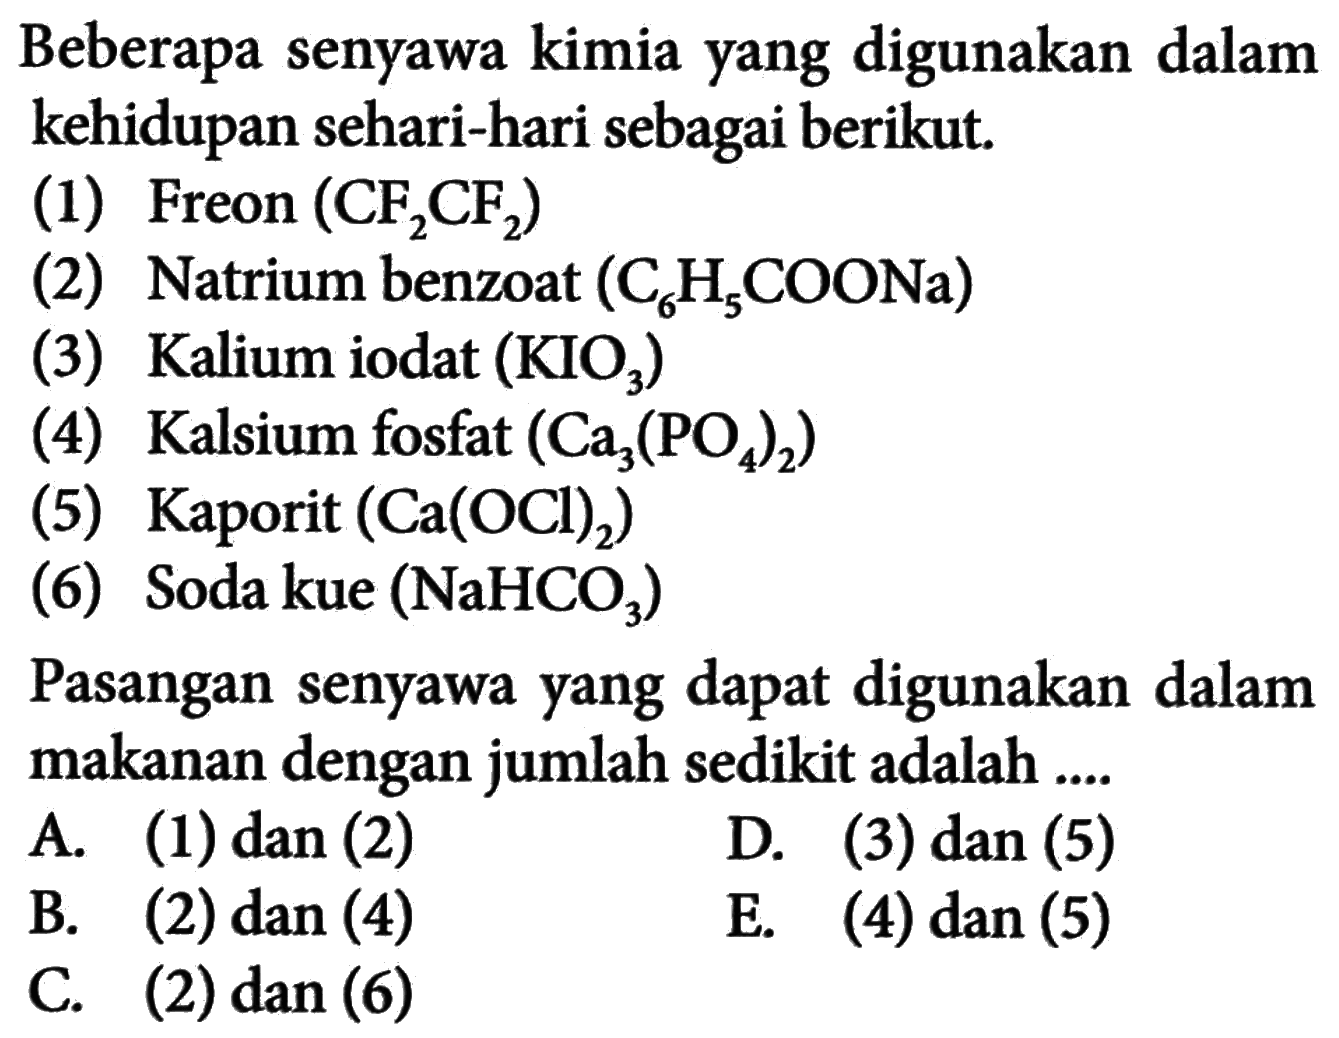 Beberapa senyawa kimia yang digunakan dalam kehidupan sehari-hari sebagai berikut. (1) Freon (CF2CF2) (2) Natrium benzoat (C6H5COONa)  (3) Kalium iodat (KIO3) (4) Kalsium fosfat (Ca3(PO4)2)  (5) Kaporit (Ca(OCl)2)  (6) Soda kue (NaHCO3)  Pasangan senyawa yang dapat digunakan dalam makanan dengan jumlah sedikit adalah ....A. (1) dan (2) B. (2) dan(4) C. (2) dan (6) D. (3) dan (5) E. (4) dan(5) 